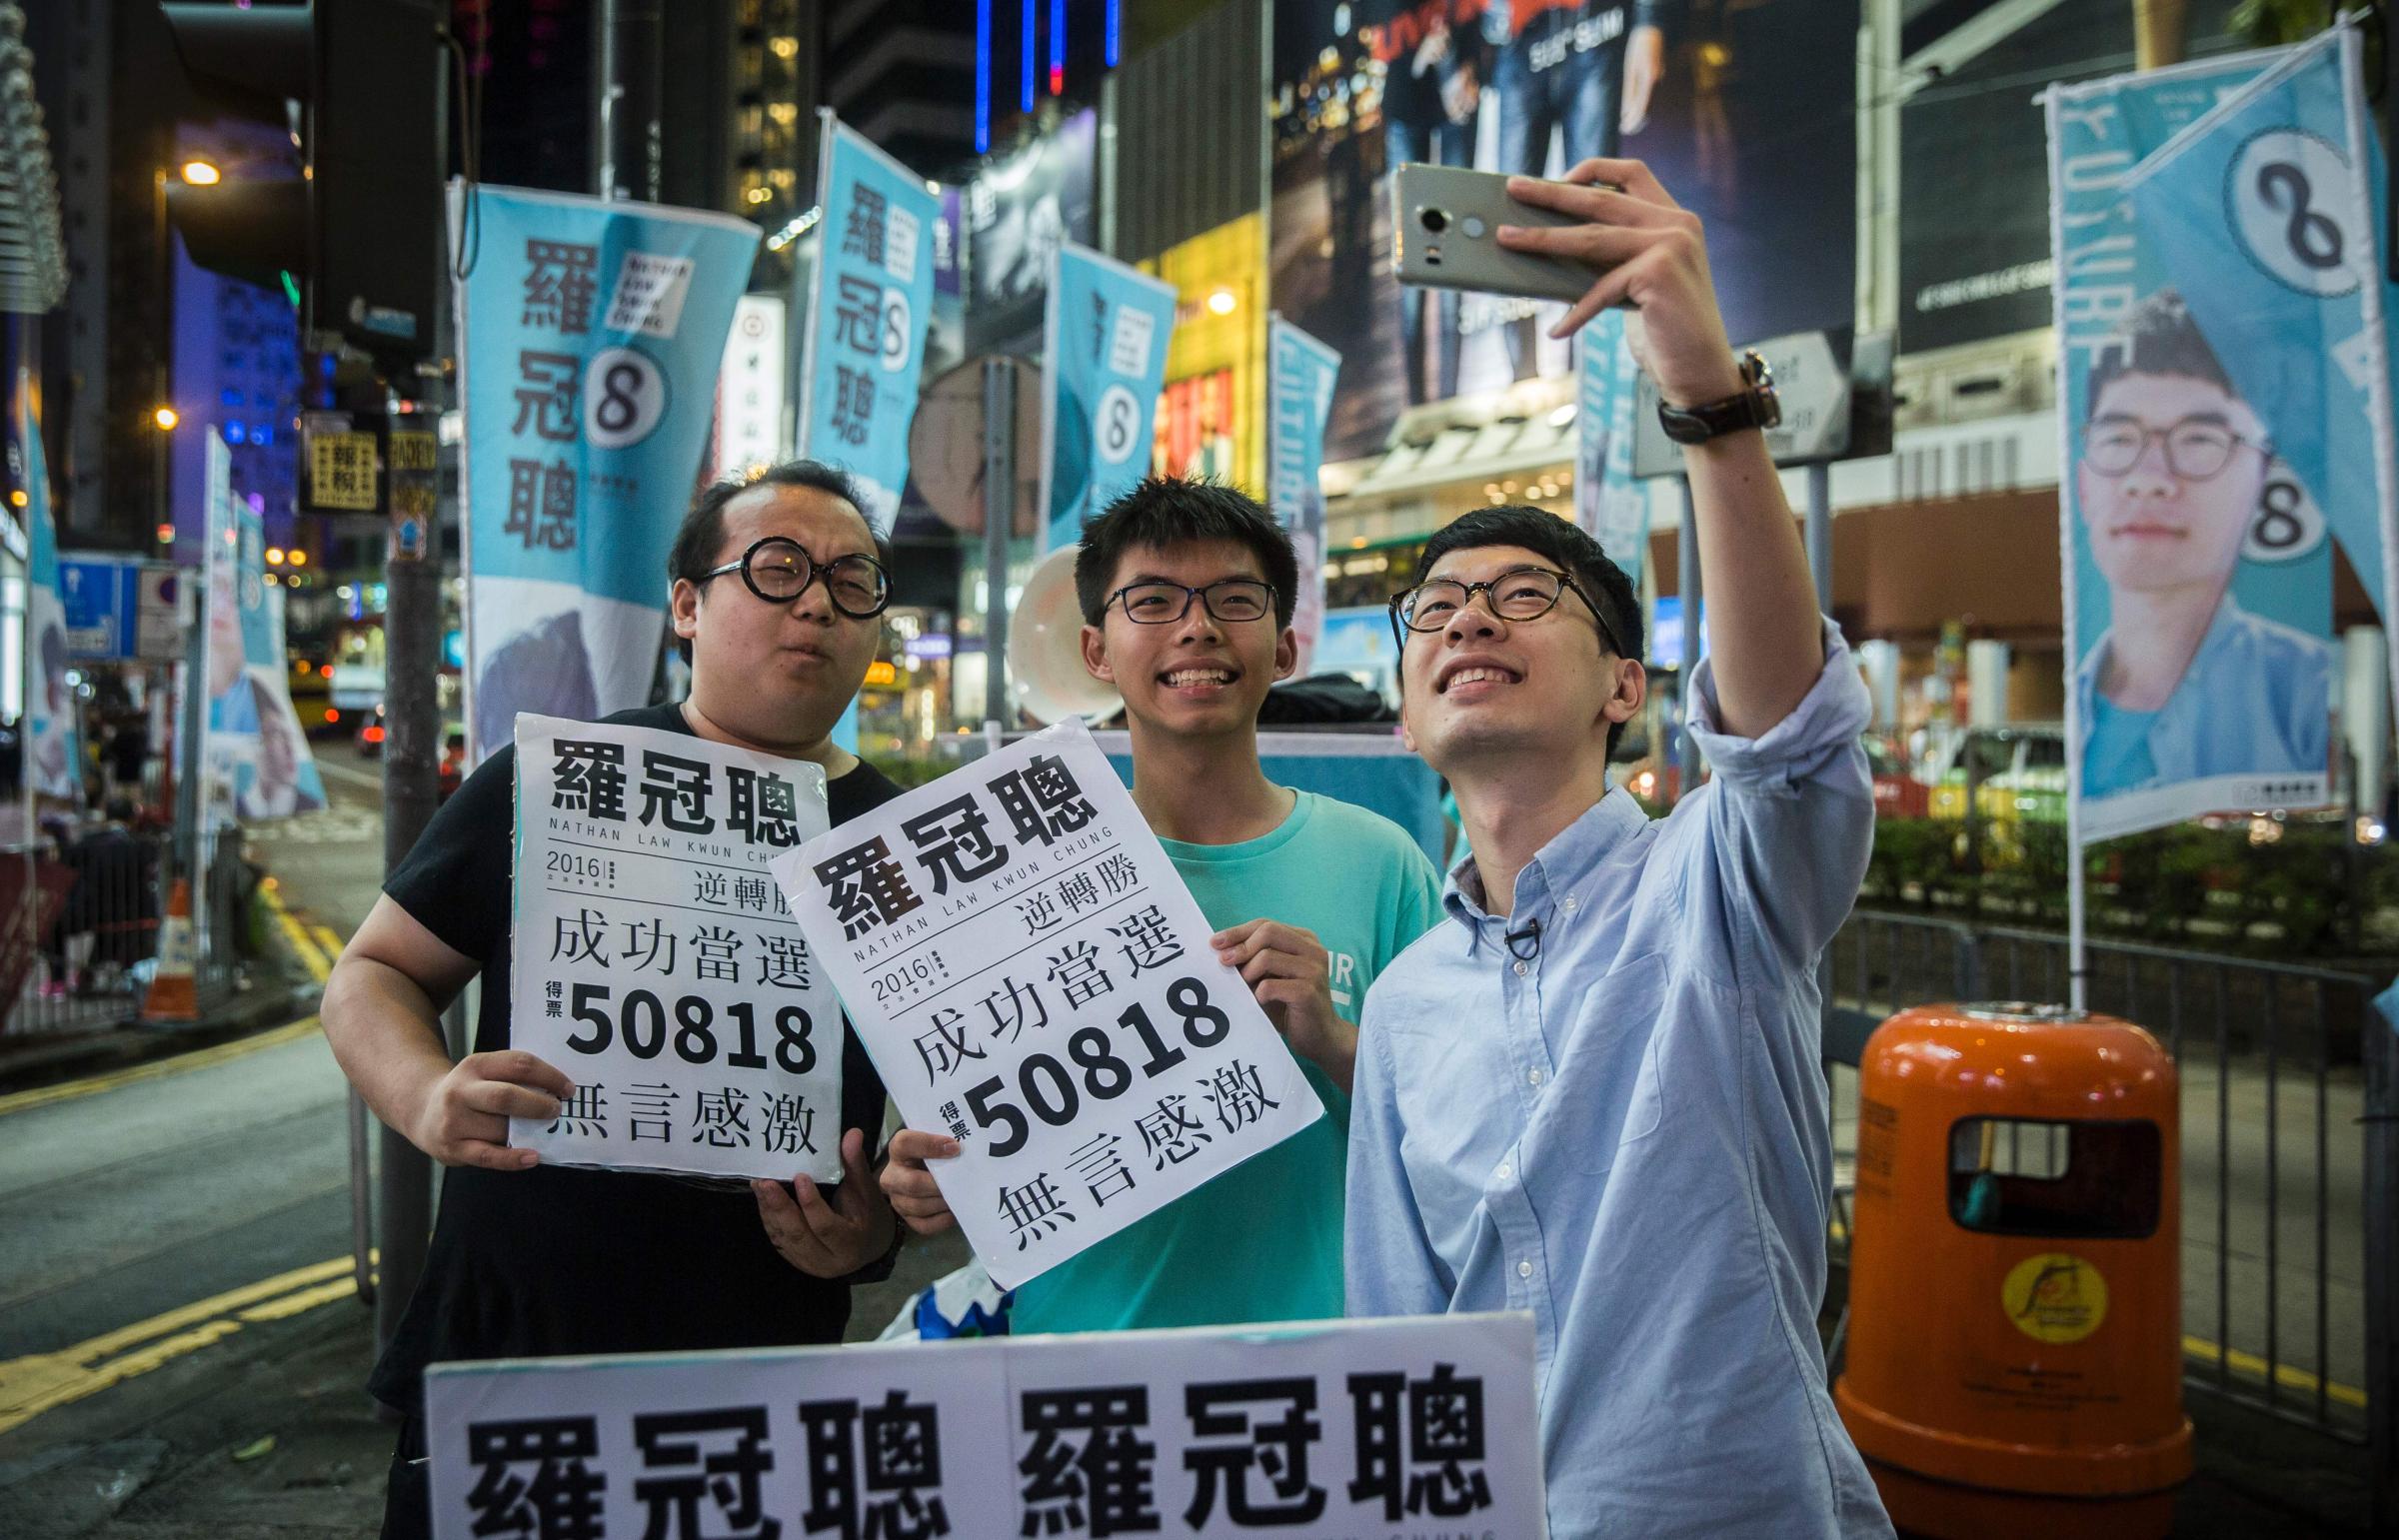 HONGKONG-CHINA-DEMOCRACY-INDEPENDENCE-ELECTIONS-POLITICS